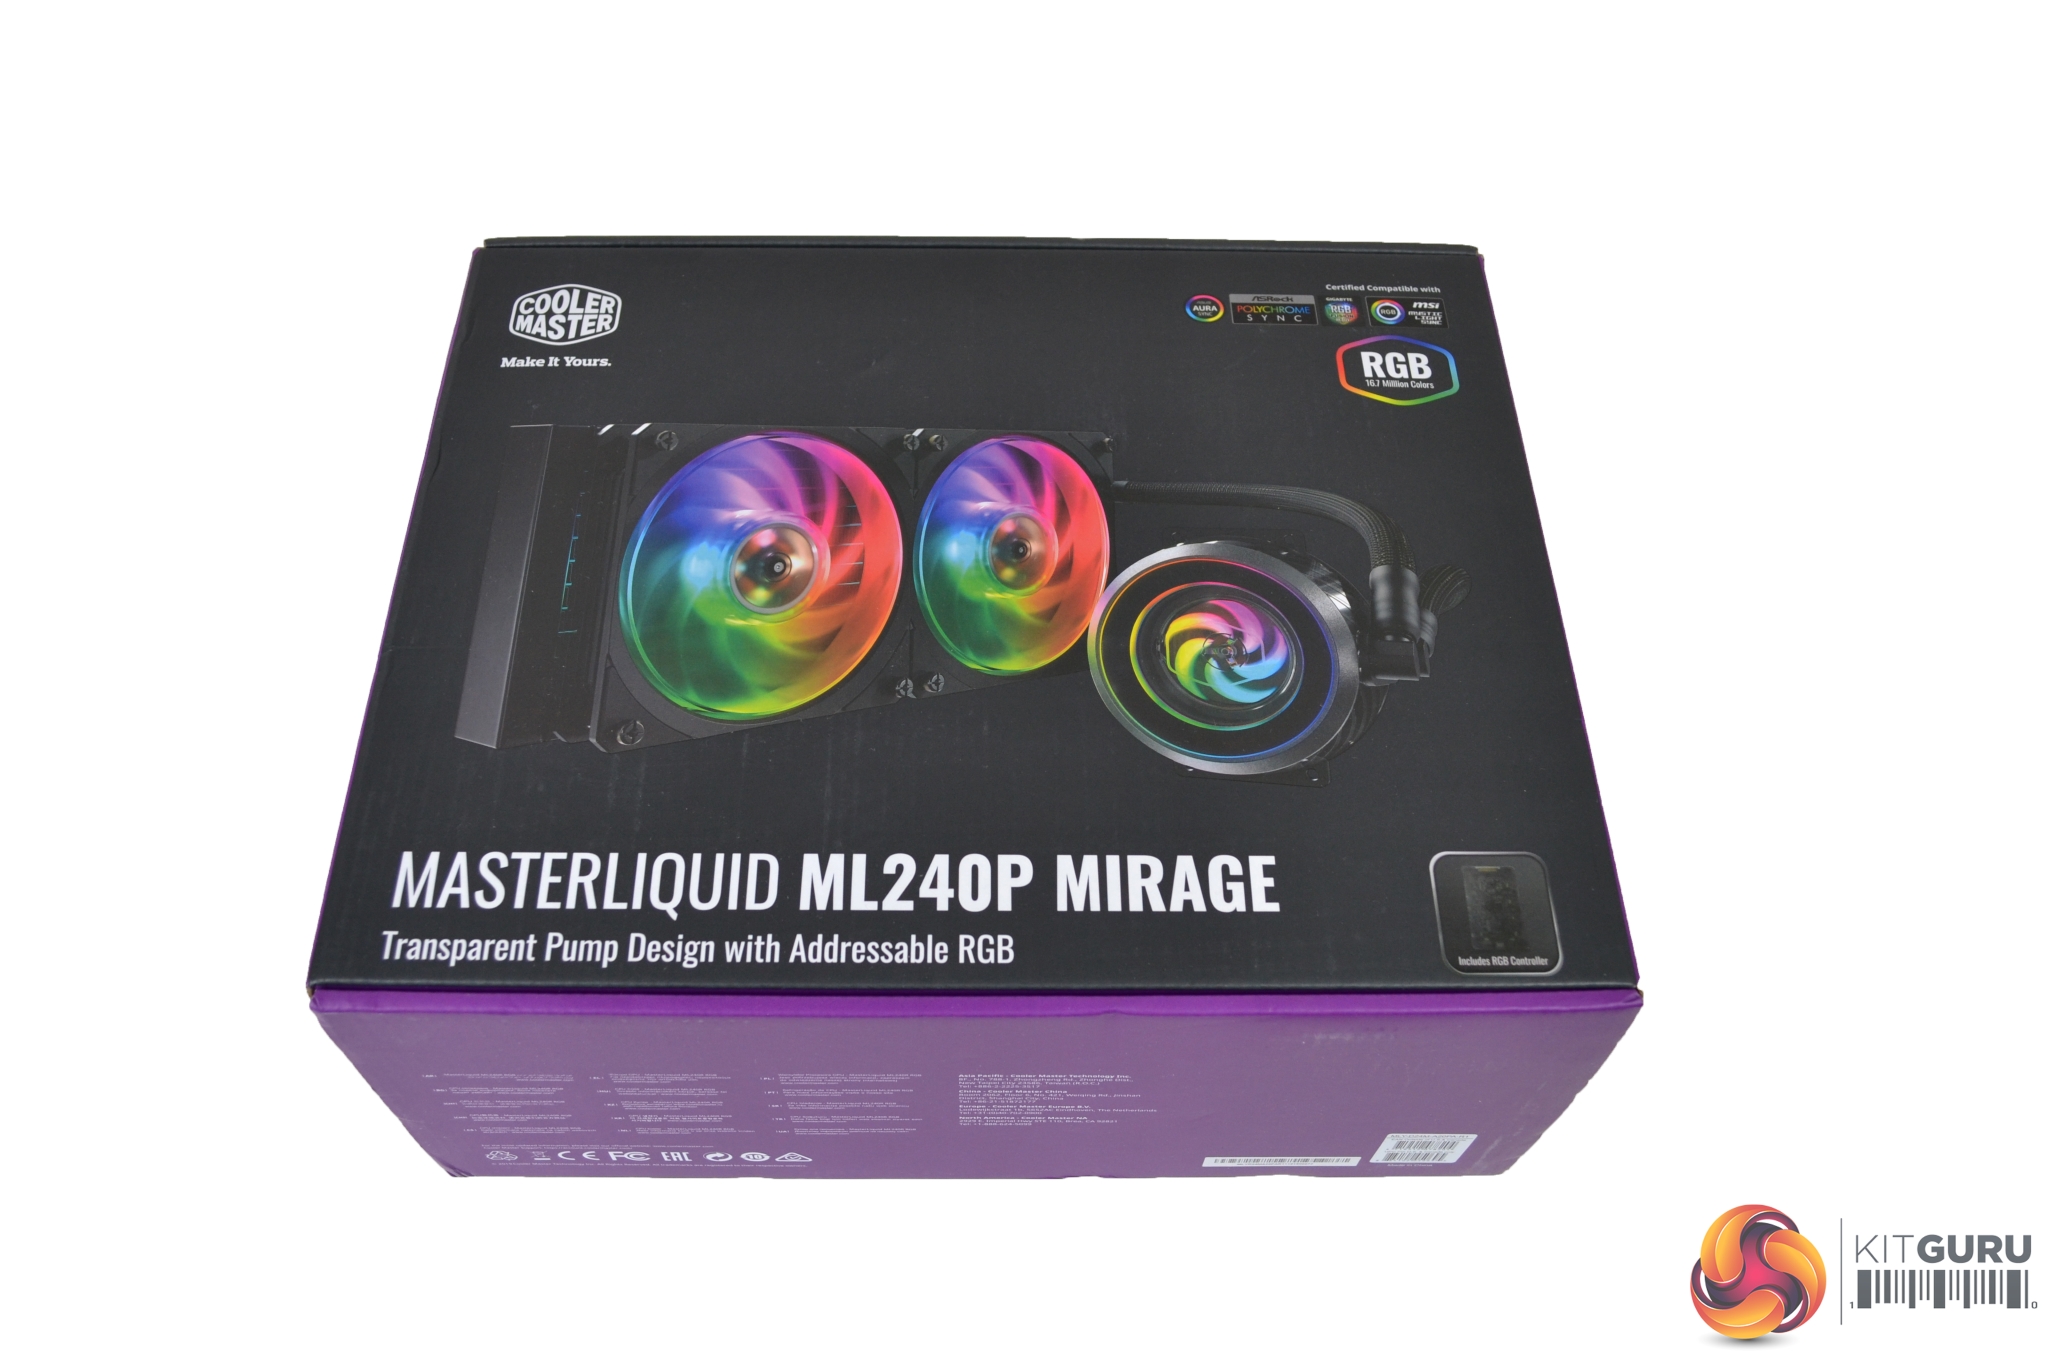 MasterLiquid ML240P Mirage all-in-one liquid CPU cooler